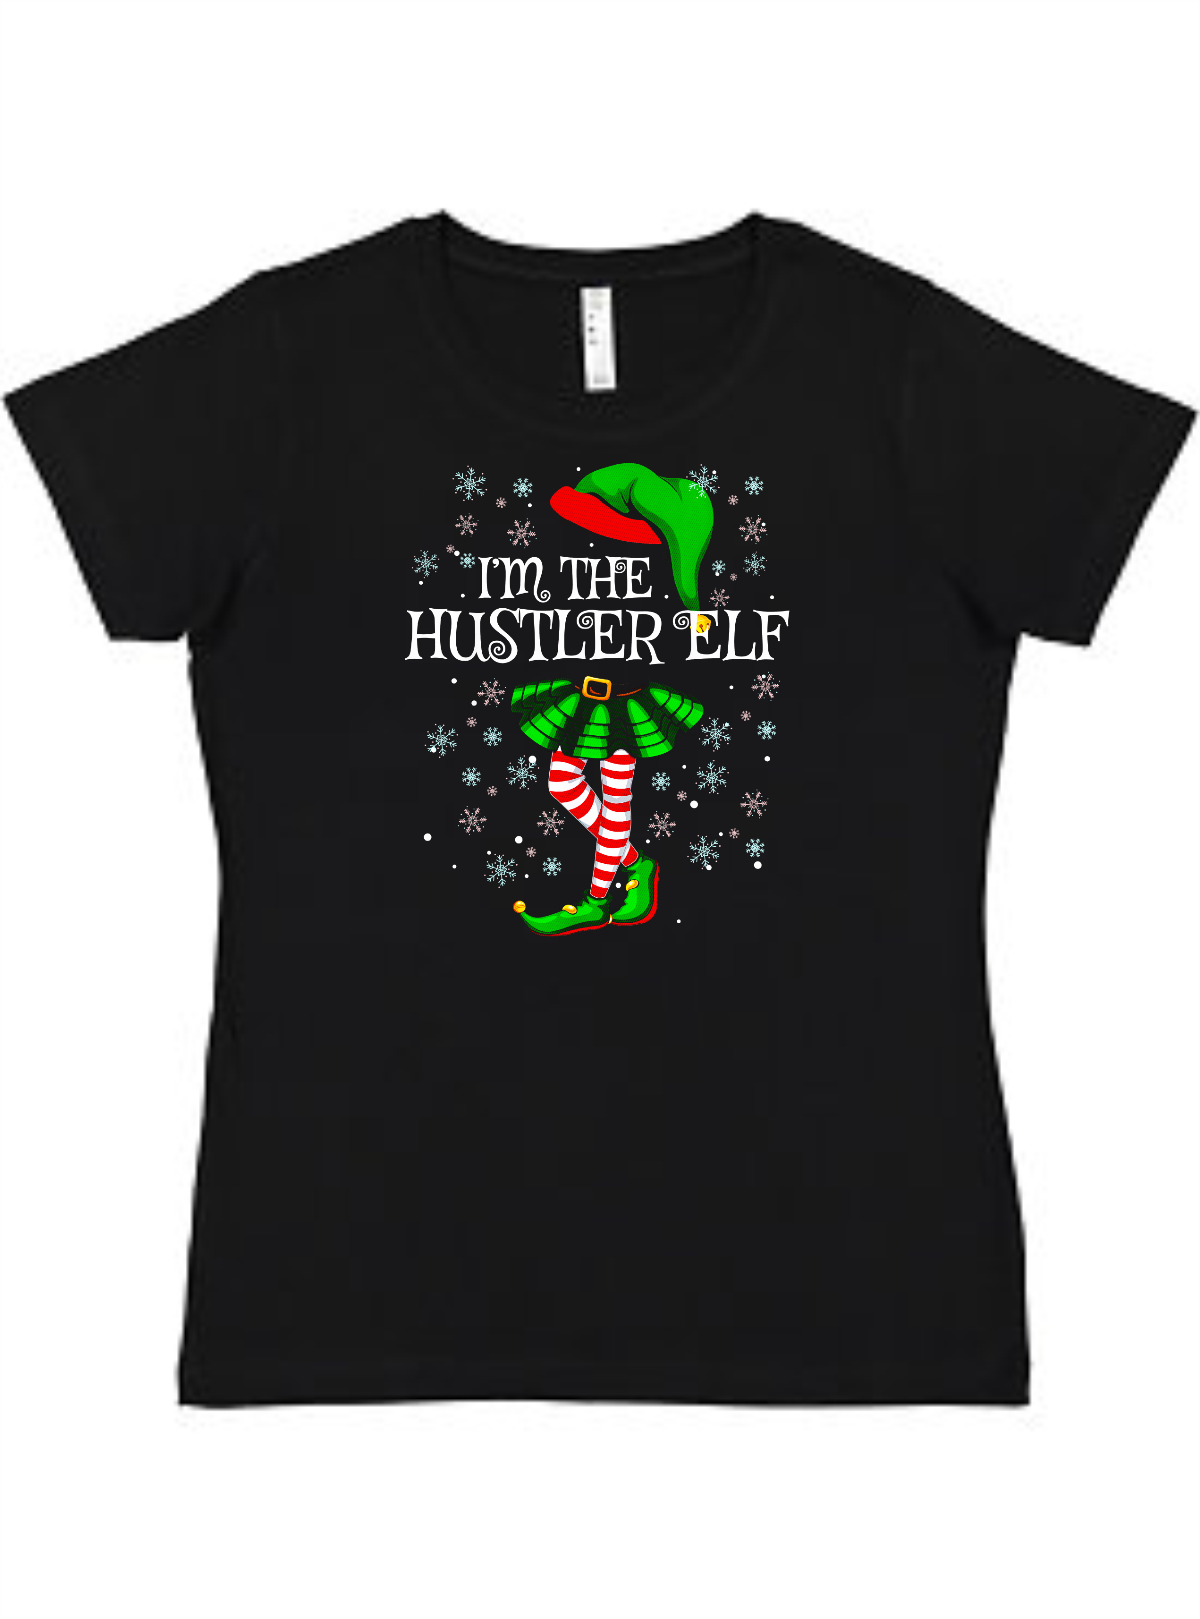 Hustler Elf Ladies Tee Akron Pride Custom Tees